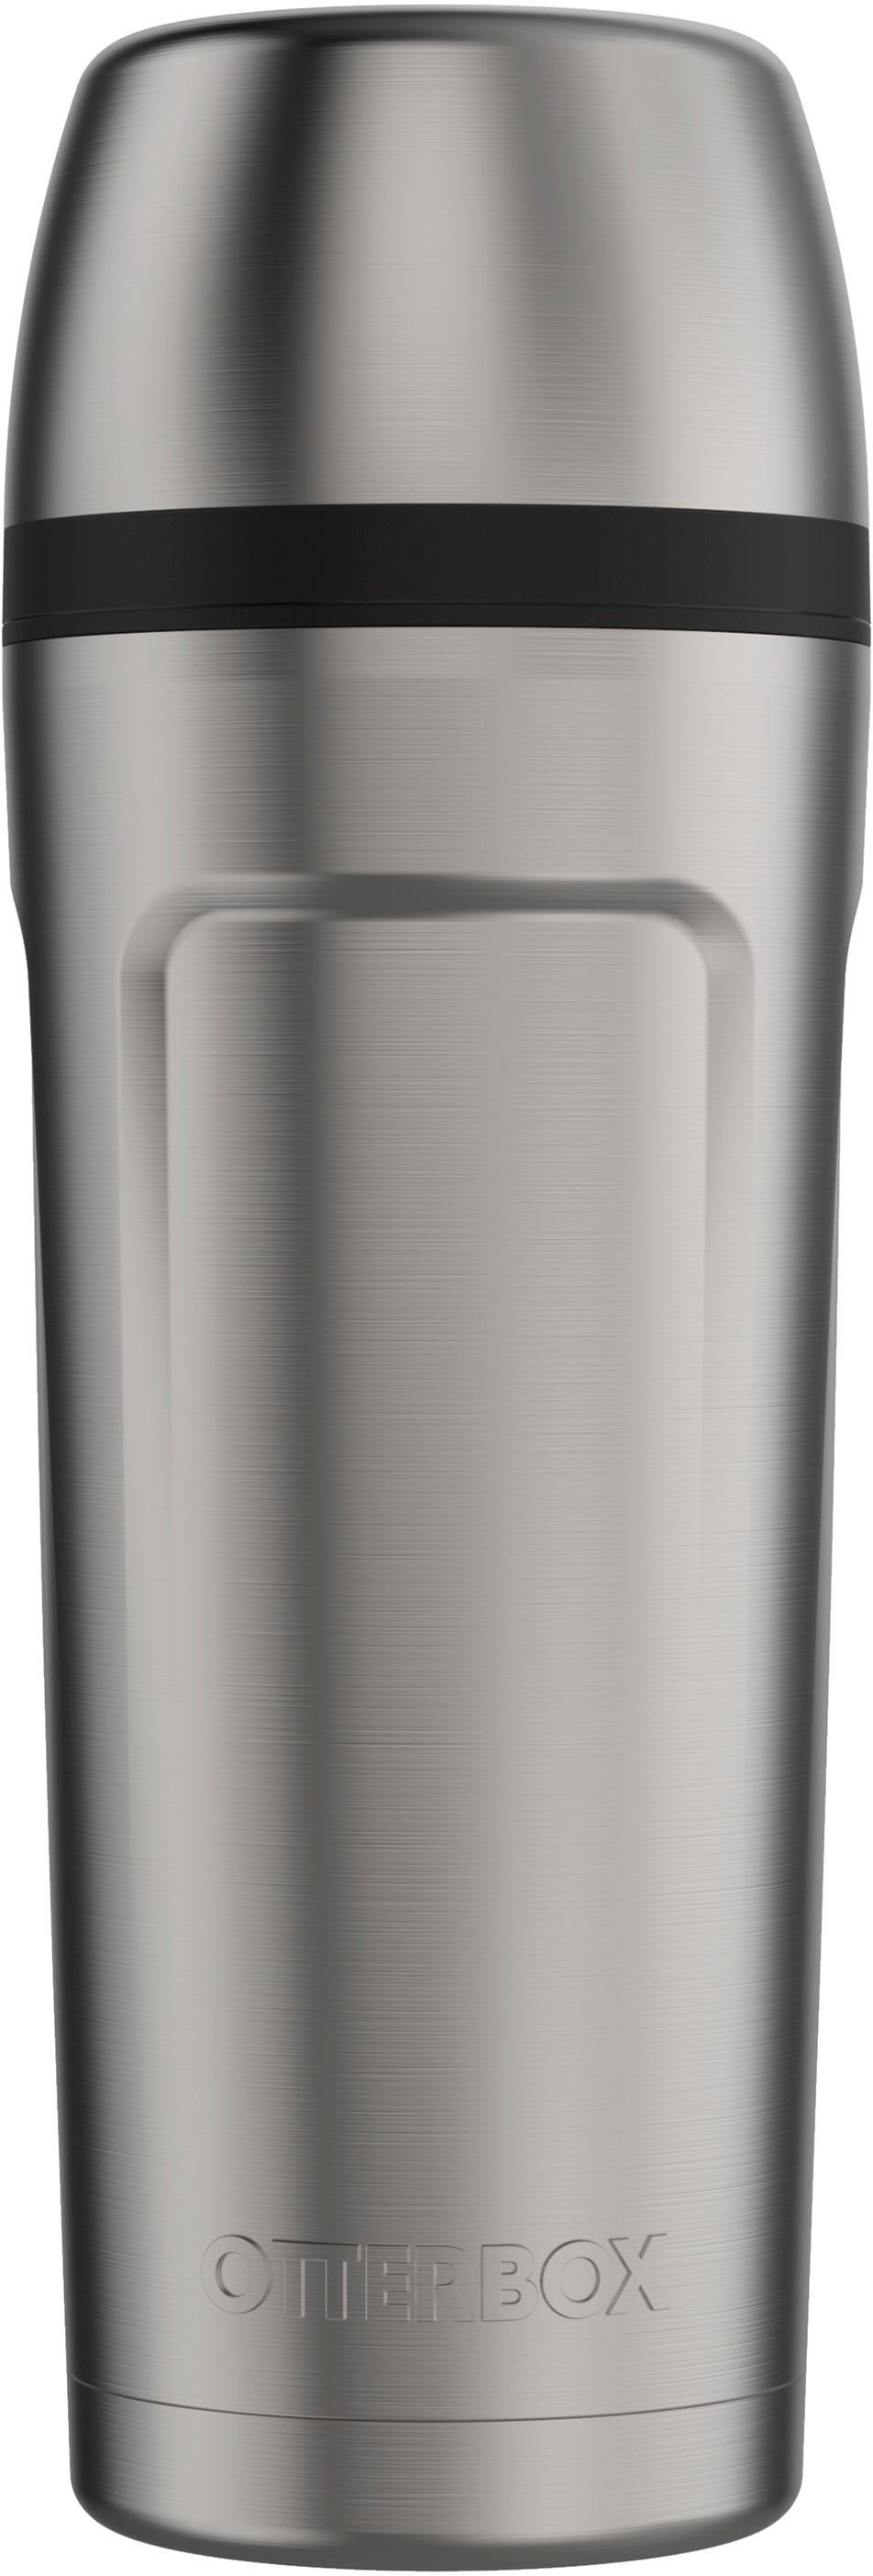 Best Buy: Keurig Stainless-Steel Travel Mug Silver 5024